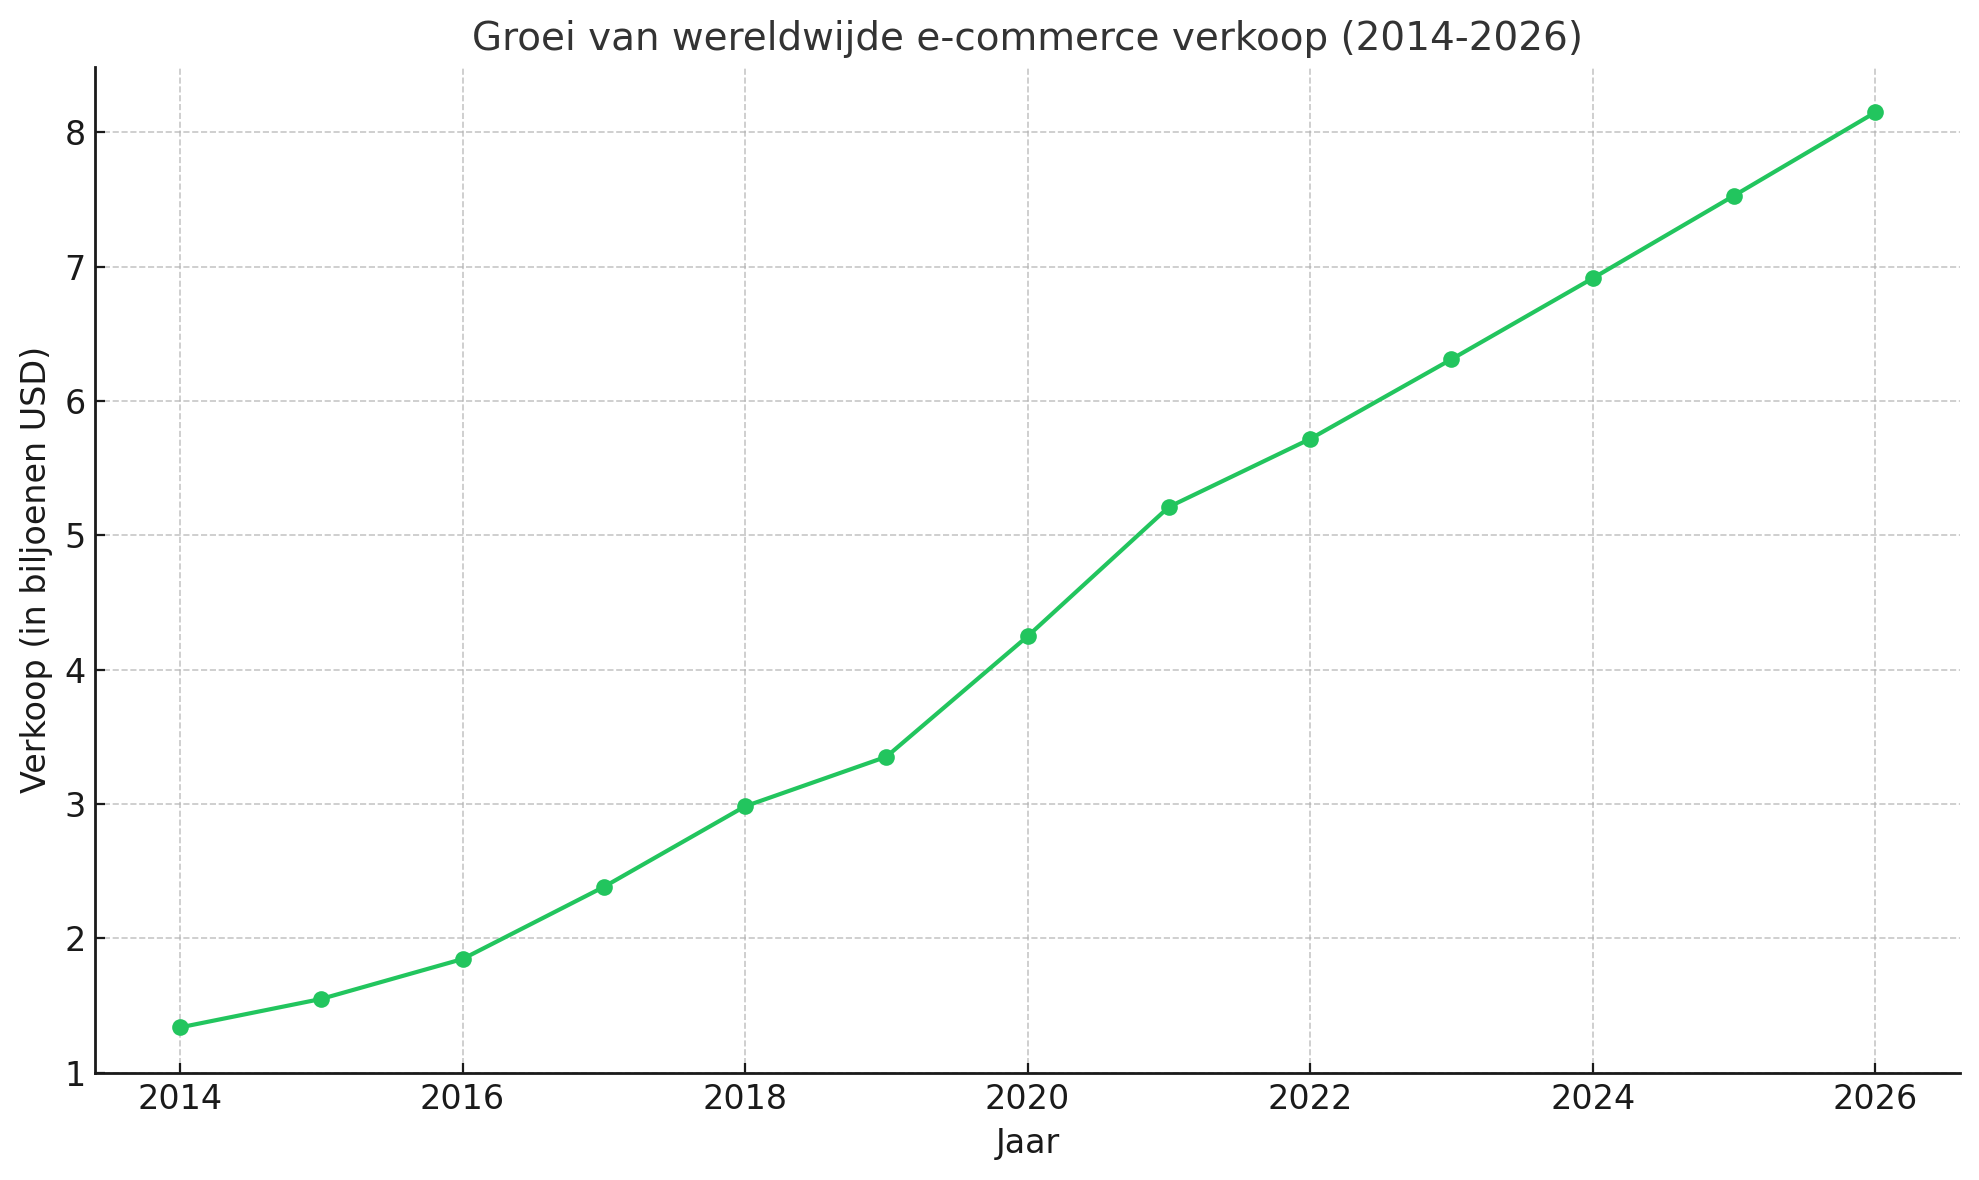 Groei van Wereldwijde E-commerce Verkoop